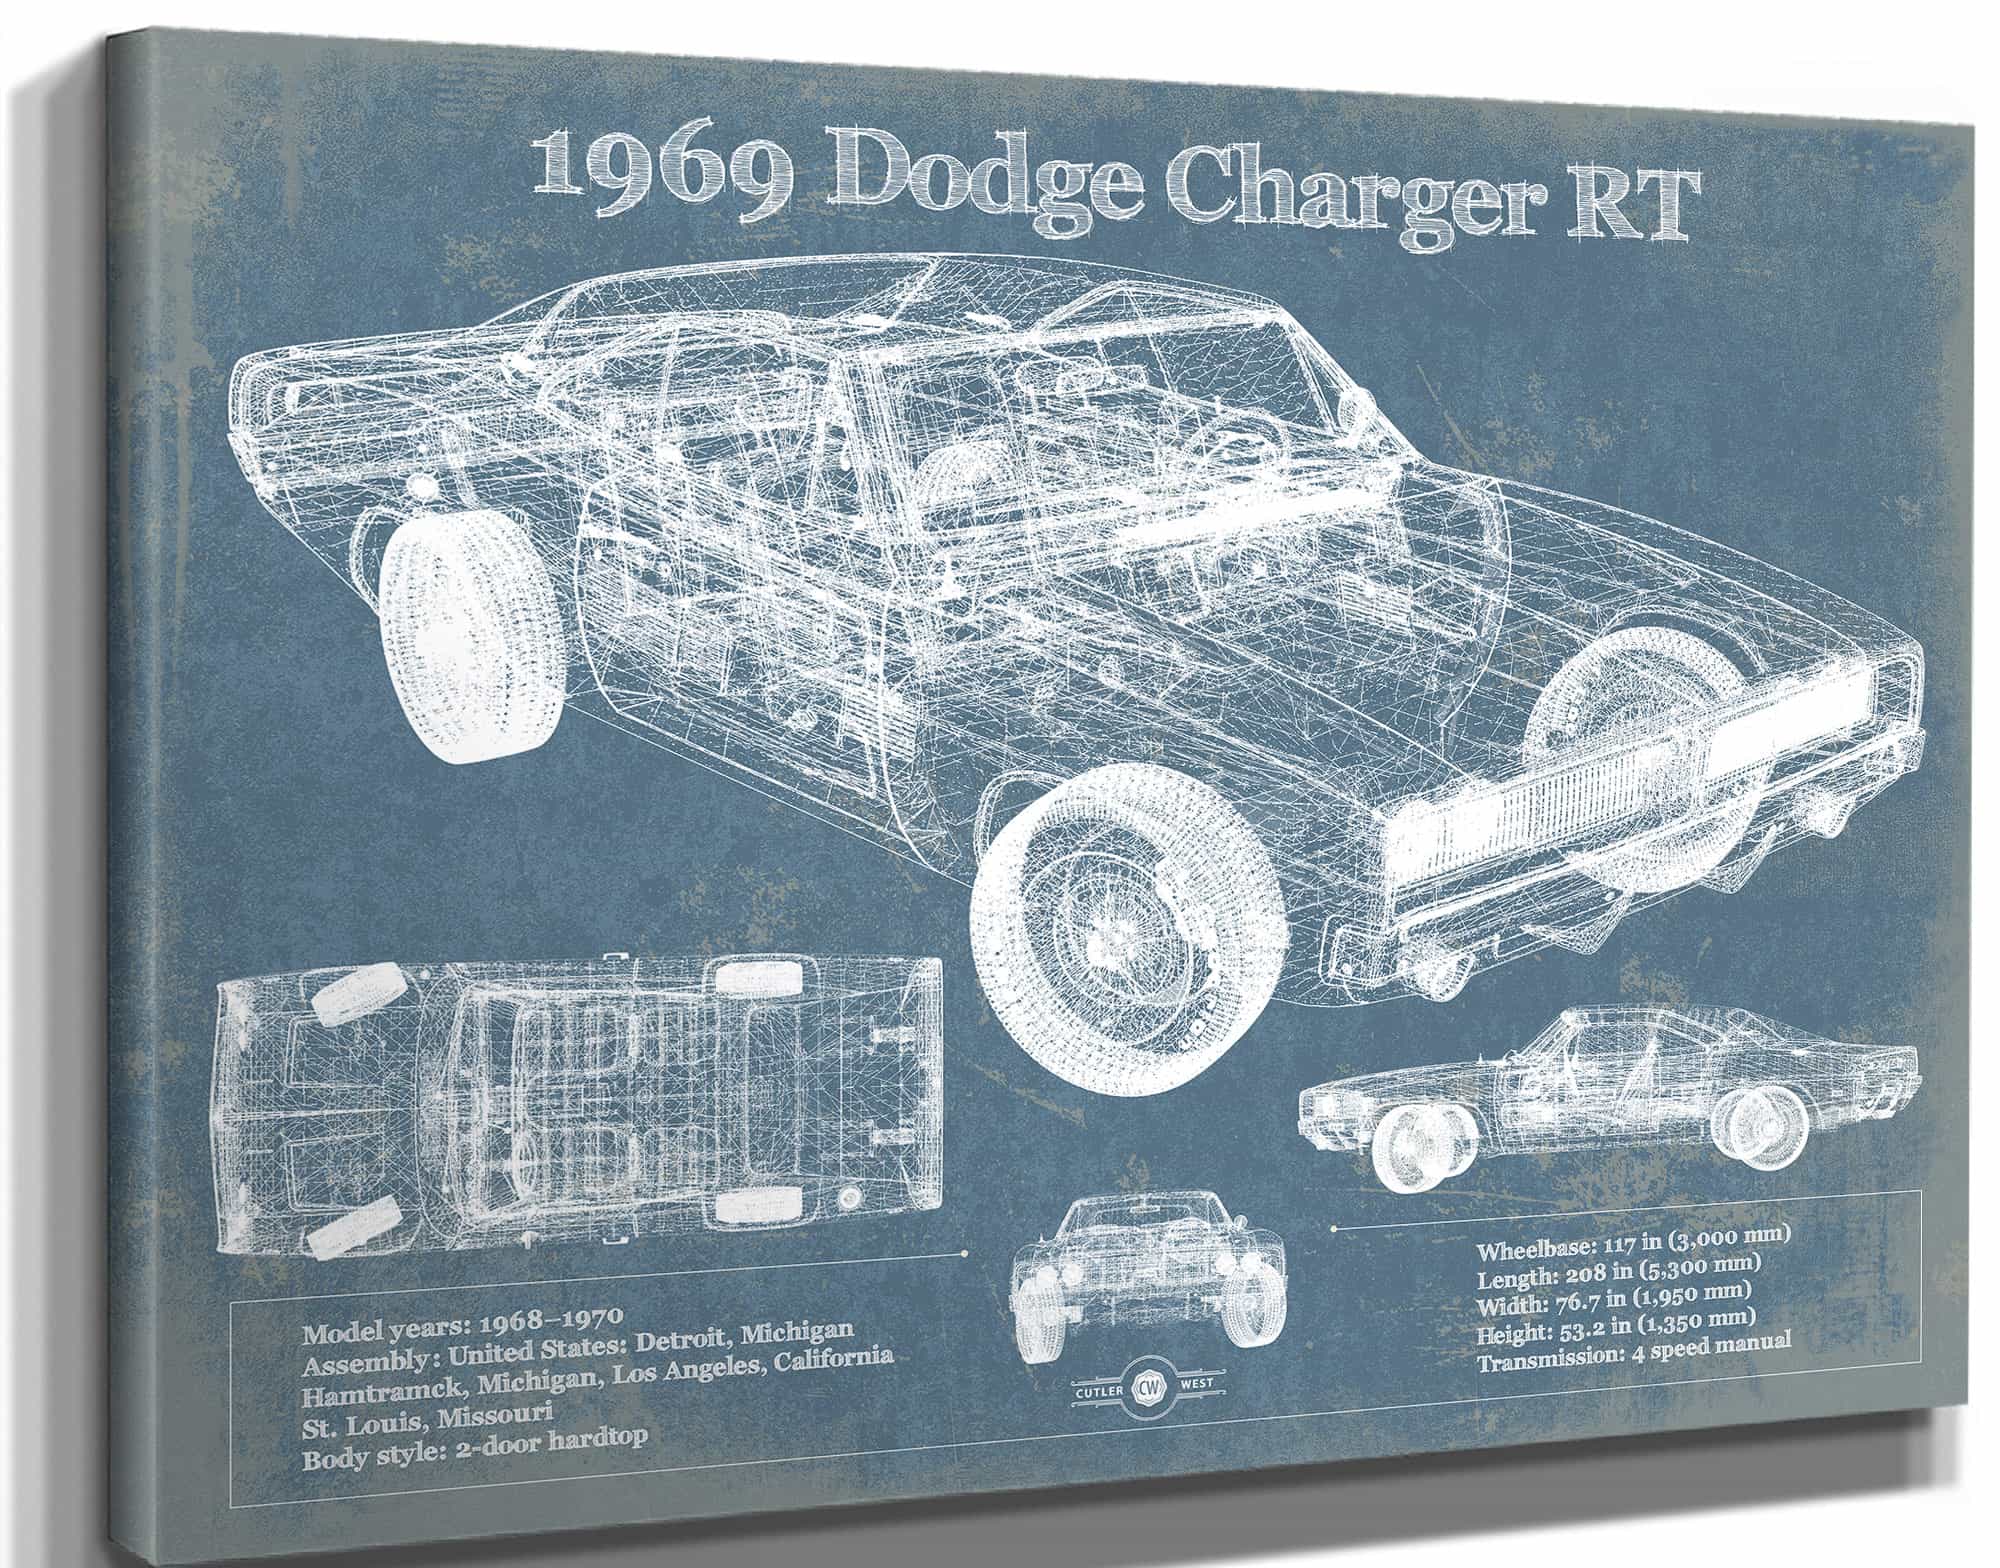 1969 Dodge Charger R/T Blueprint Vintage Auto Print